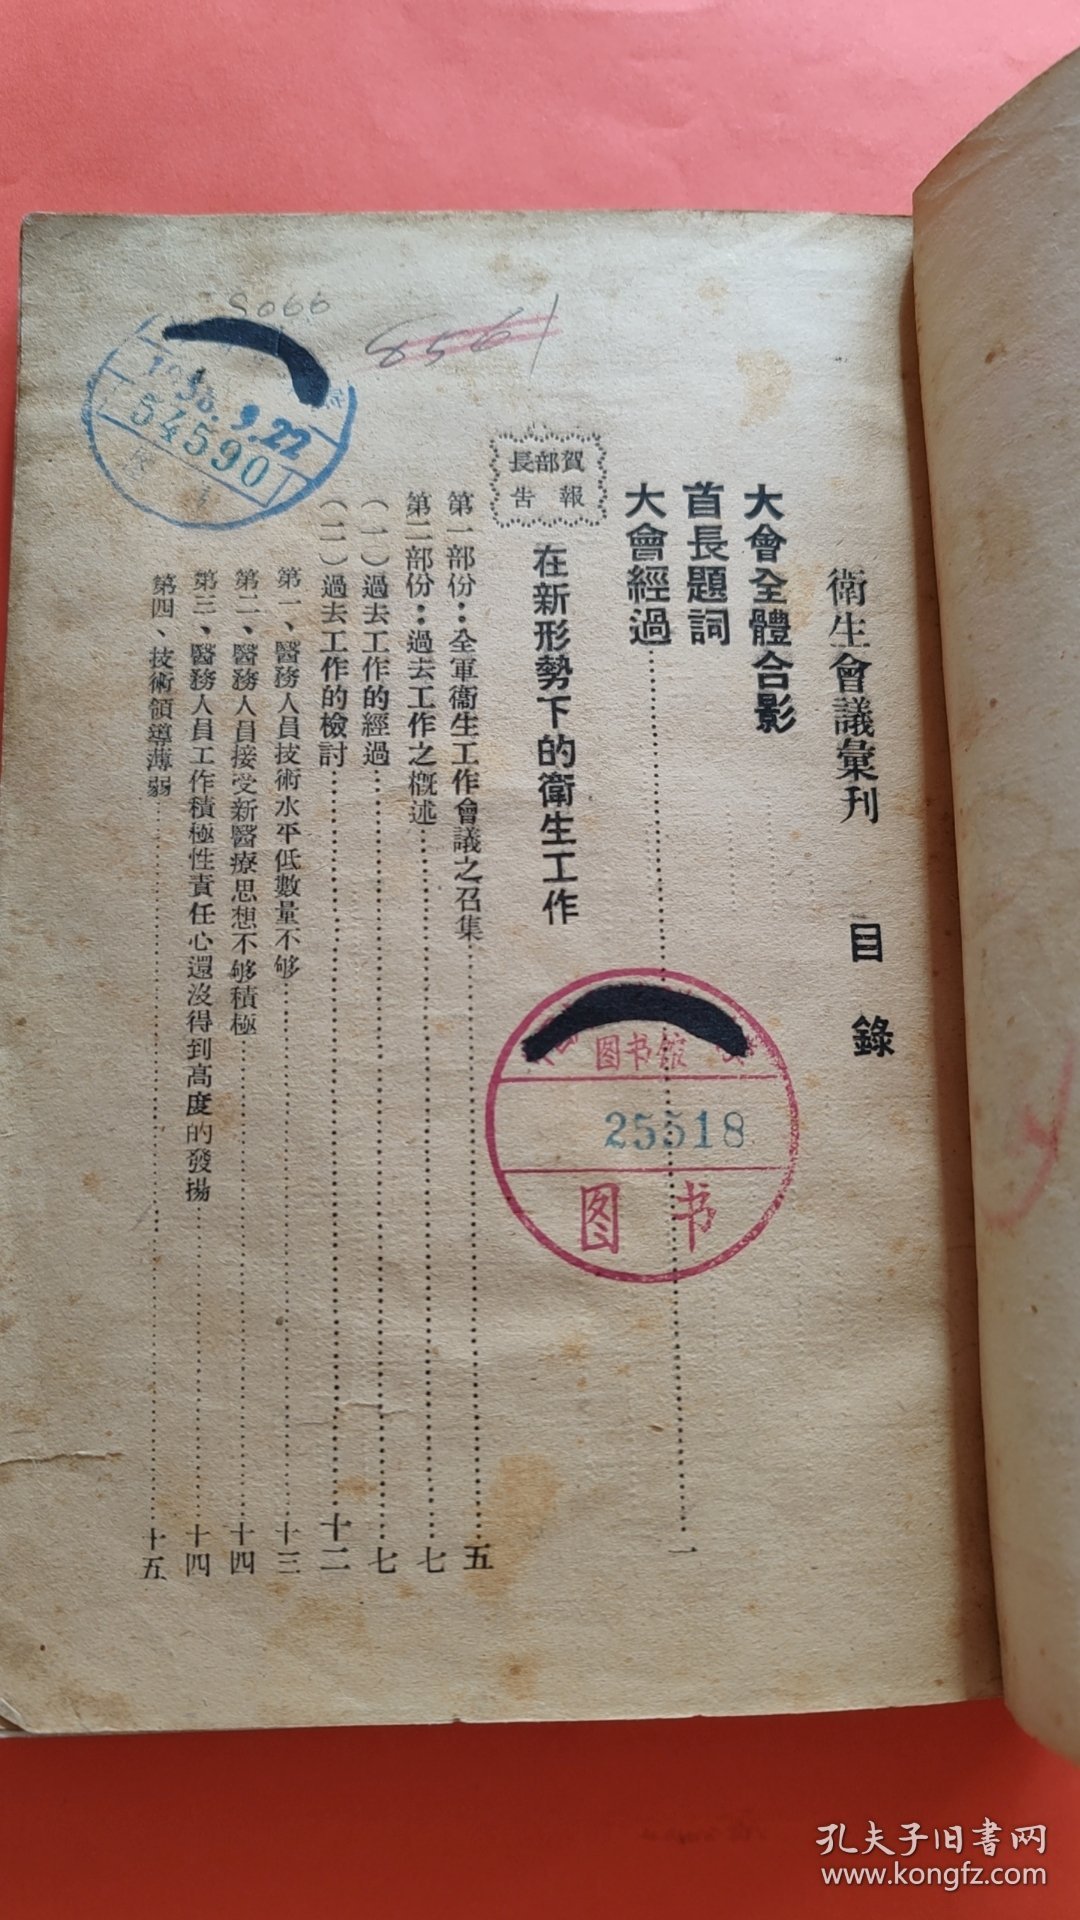 1948年出版  中国人民解放军东北军区卫生会议汇刊 有首长题词 有全体会议人员合影